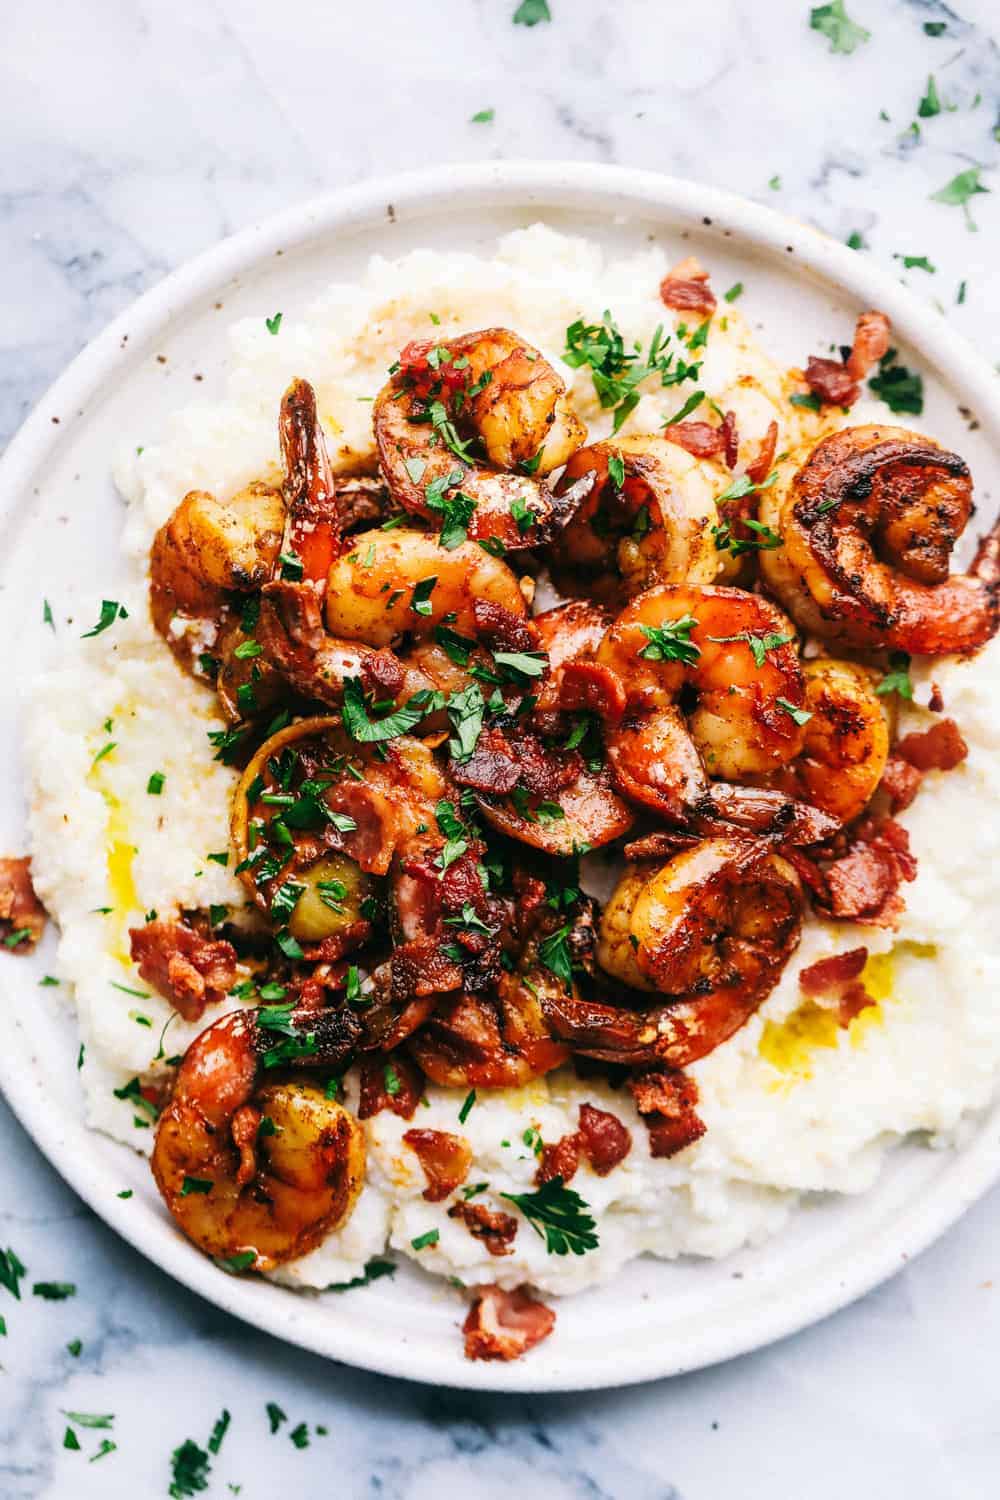 Cajun Garlic Shrimp and Grits | The Recipe Critic